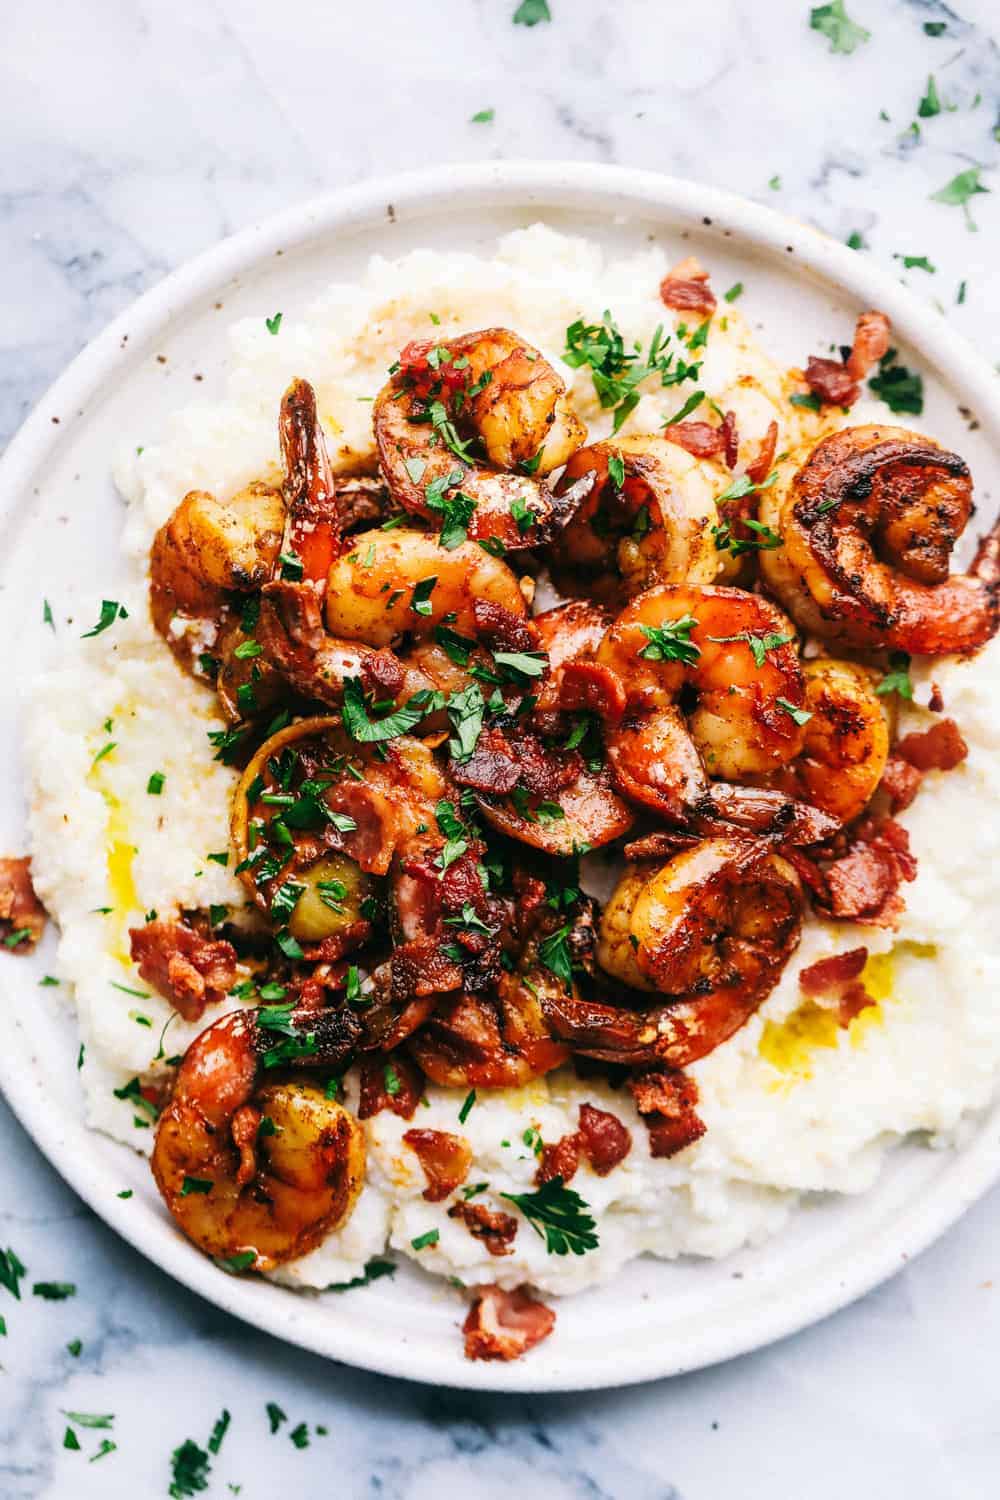 Cajun Garlic Shrimp and Grits | The Recipe Critic